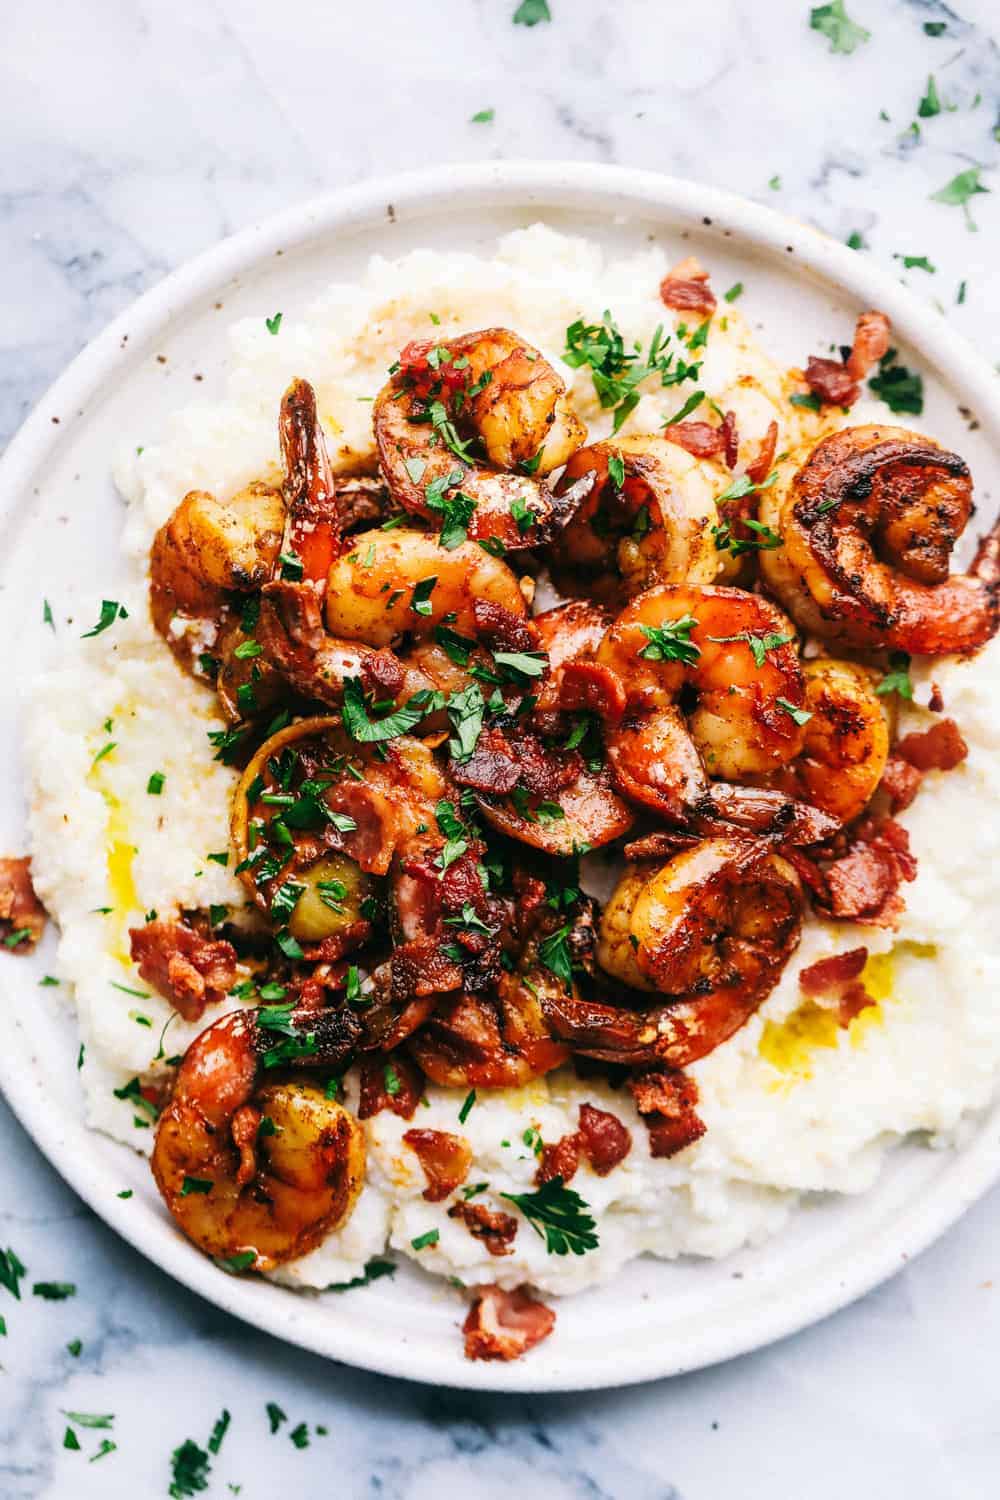 Cajun Garlic Shrimp and Grits | The Recipe Critic